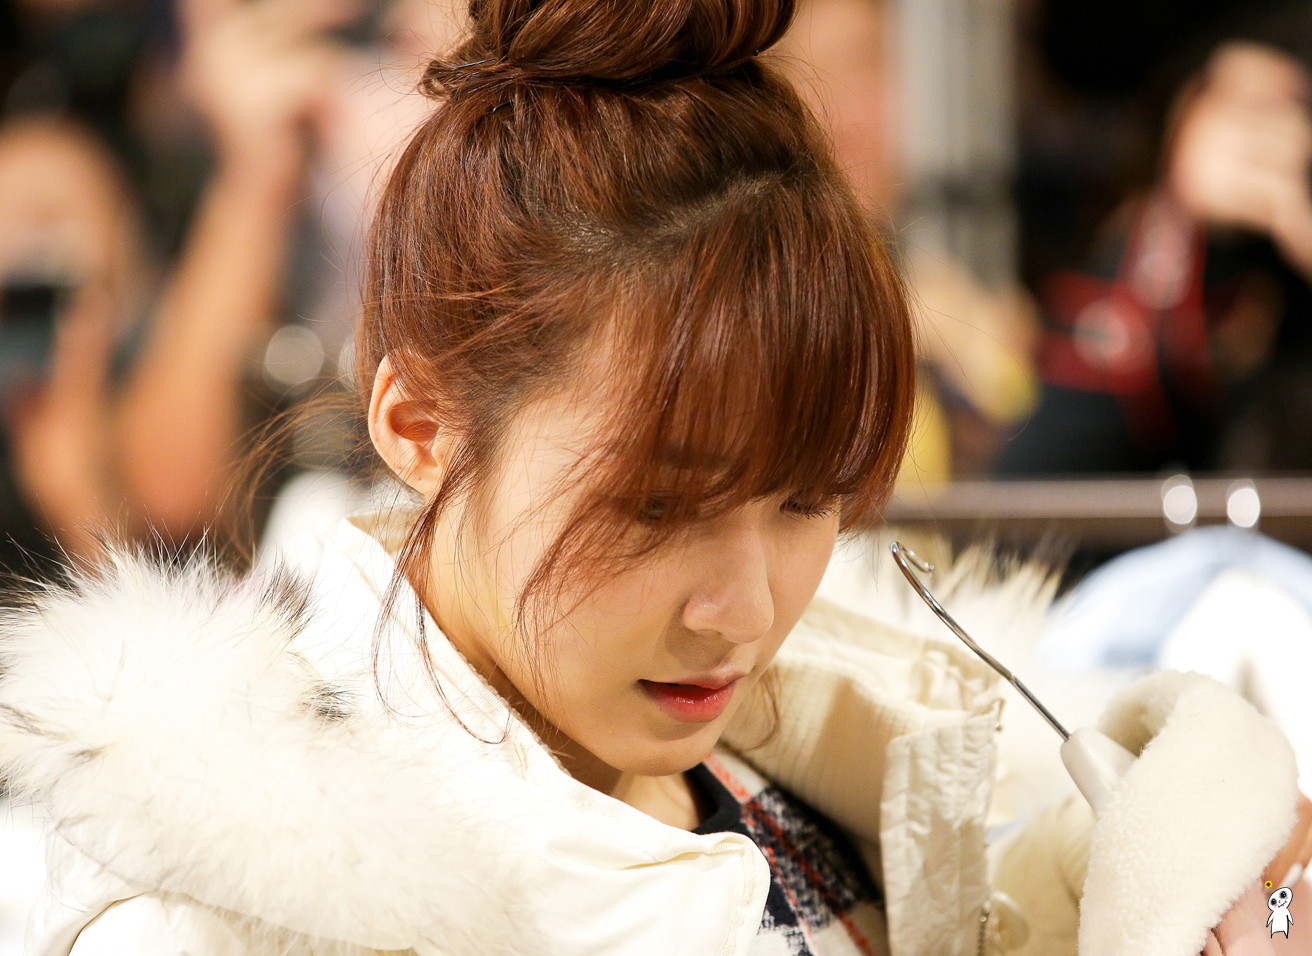 [PIC][28-11-2013]Tiffany ghé thăm cửa hàng "QUA" ở Hyundai Department Store vào trưa nay - Page 3 226DAB4252980C8E1A5859